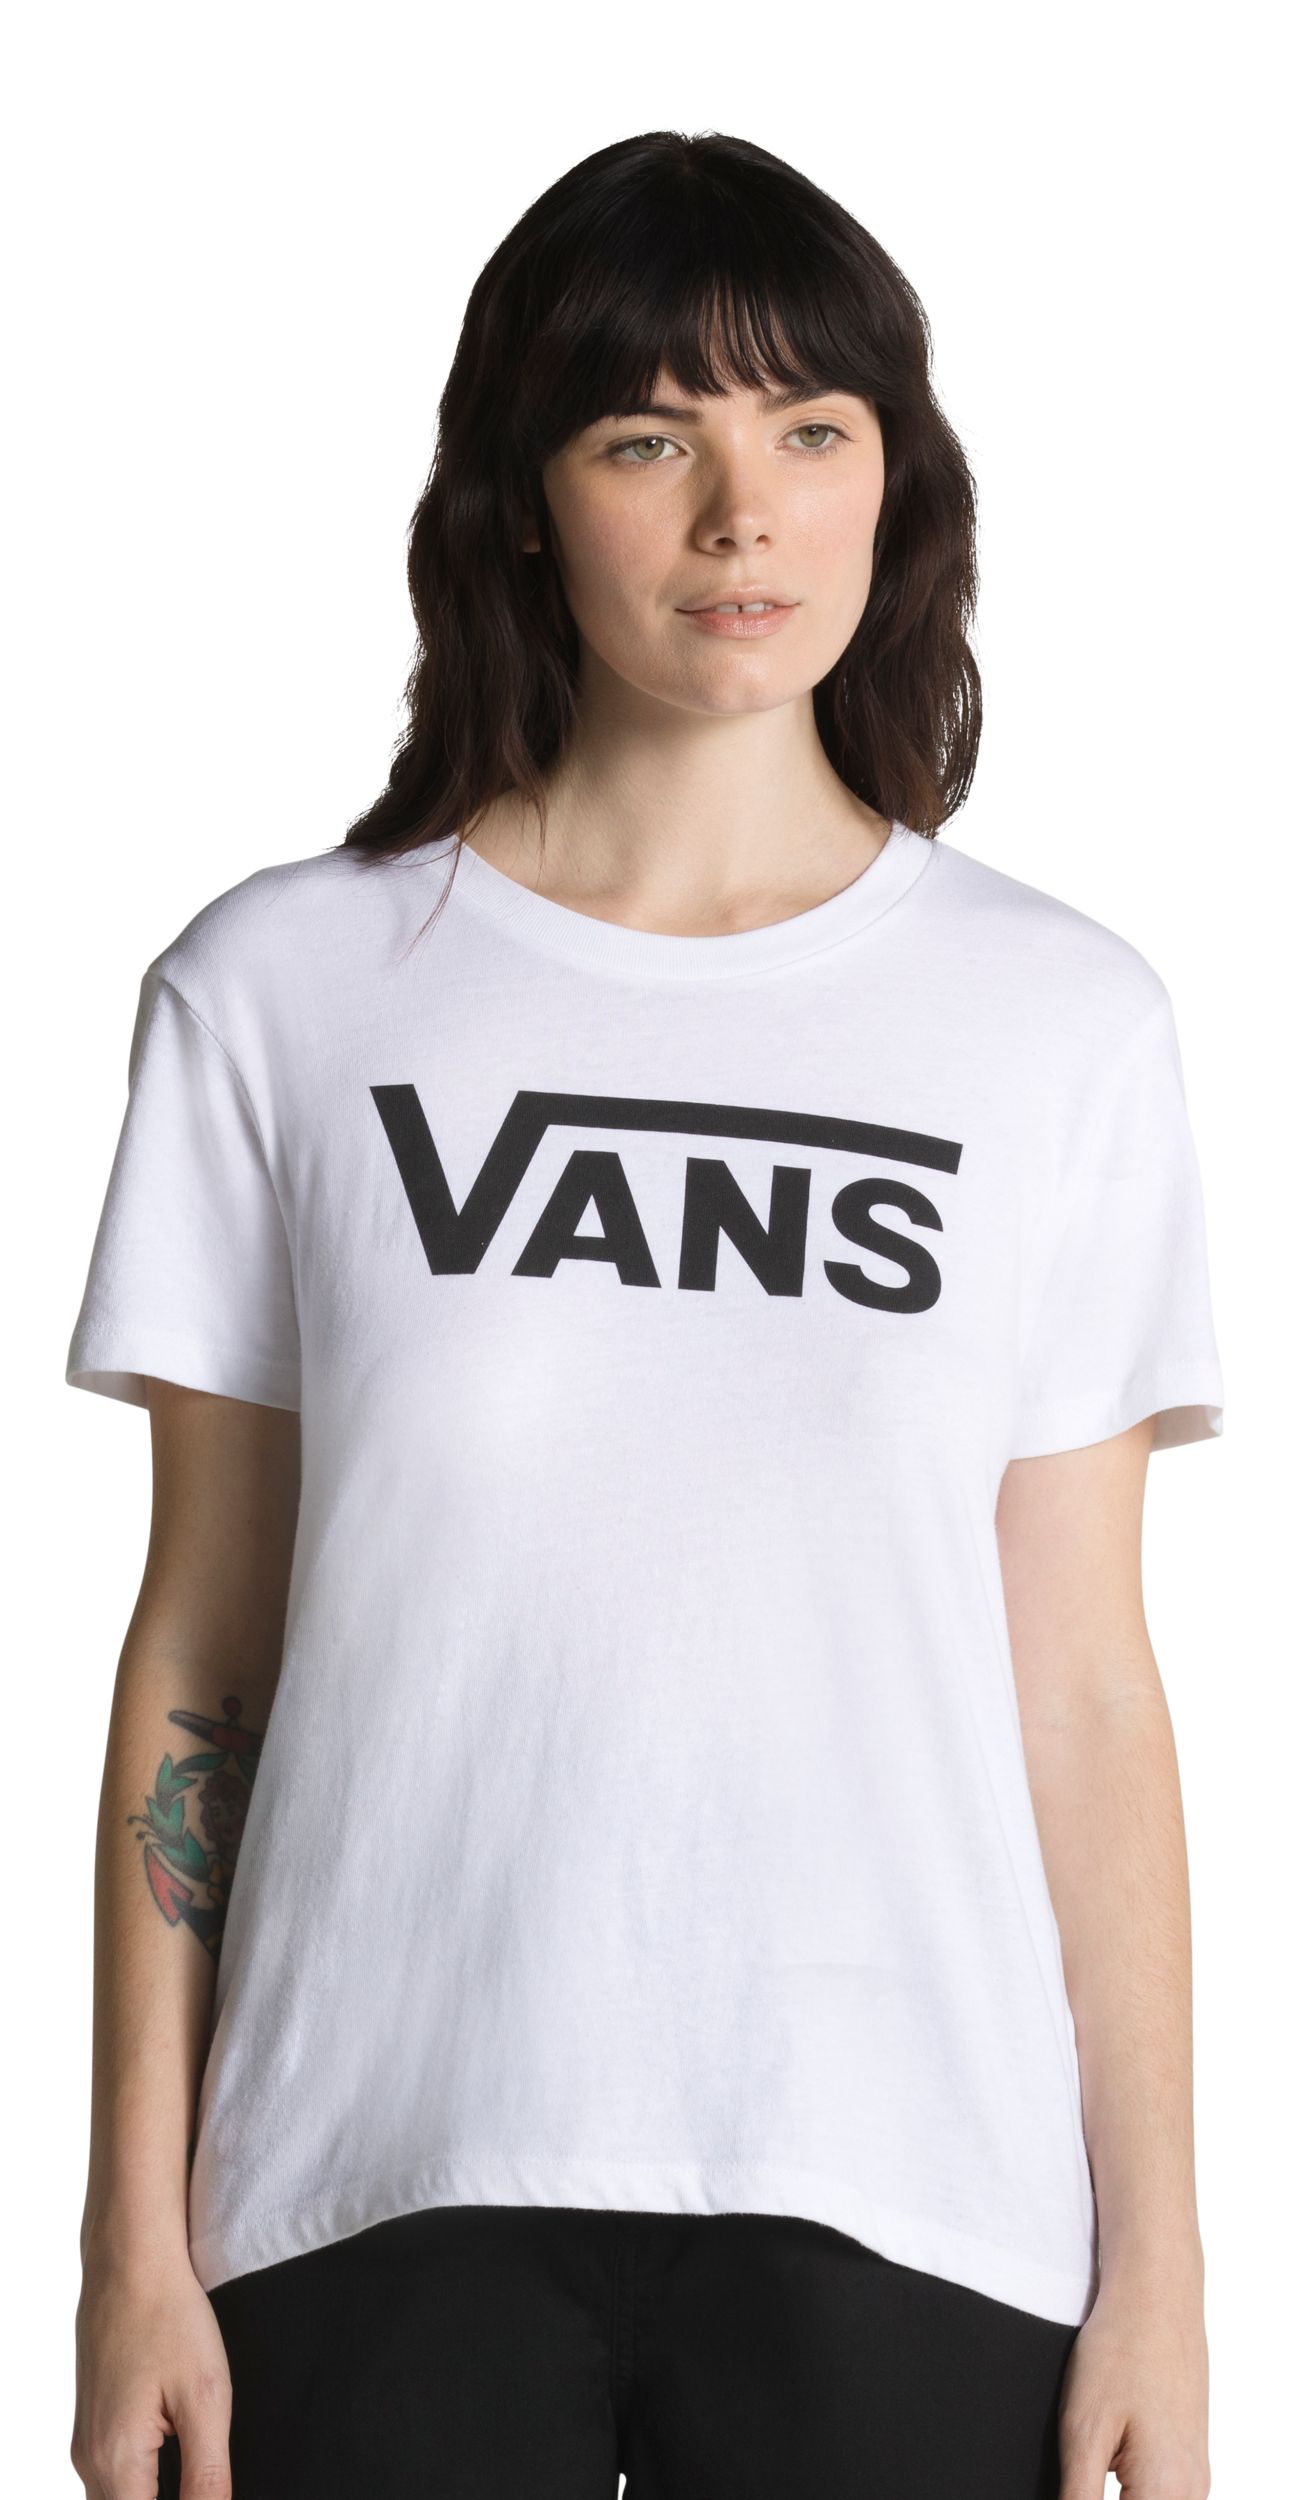 Vans Women's Flying V Crew T Shirt